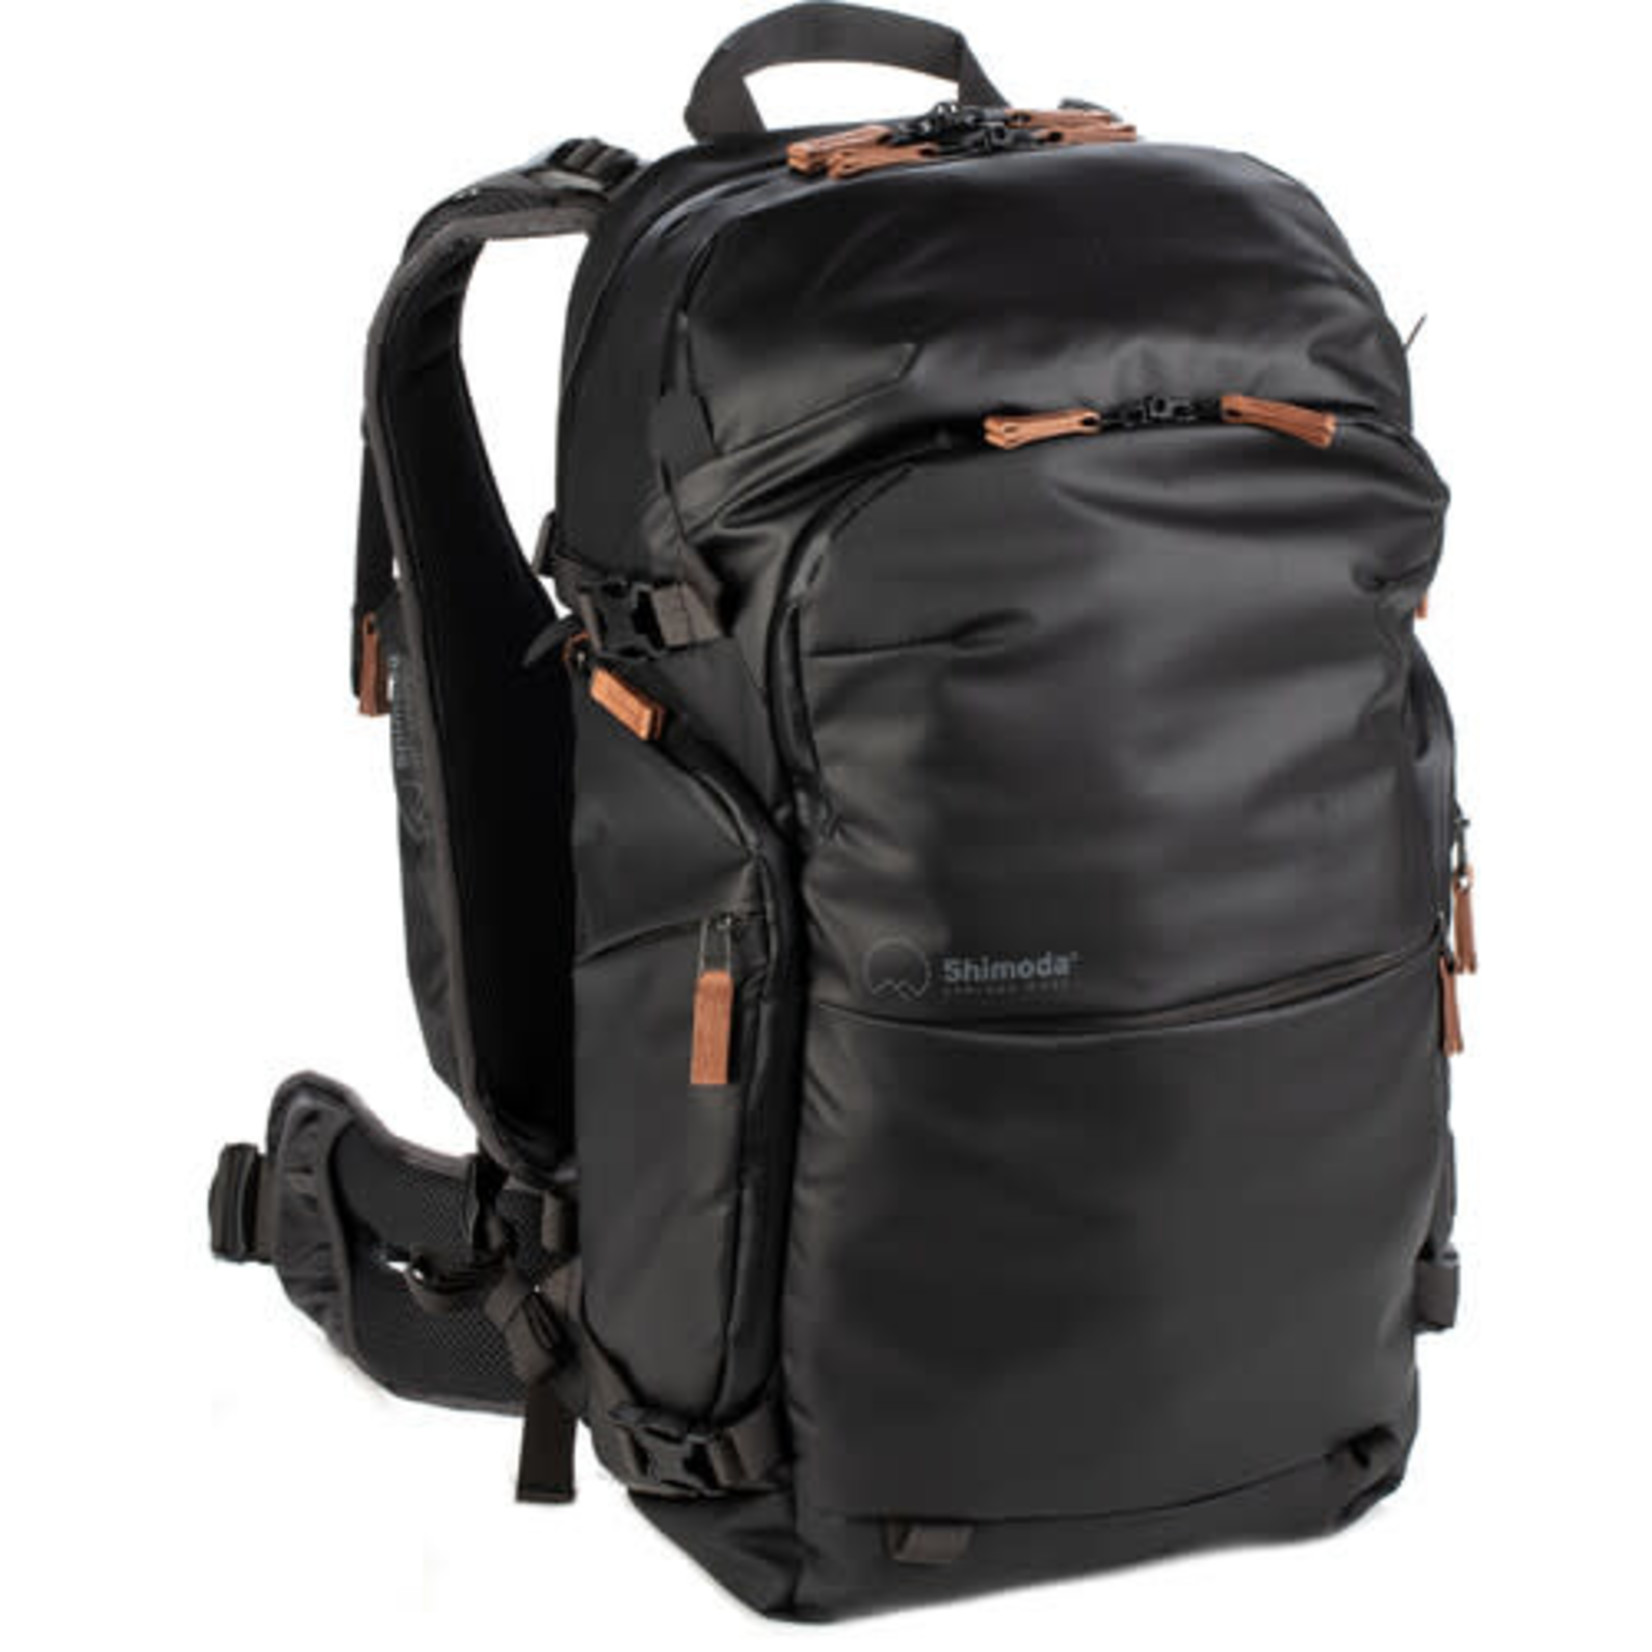 Shimoda Shimoda Designs Explore v2 25 Backpack Photo Starter Kit (Black)